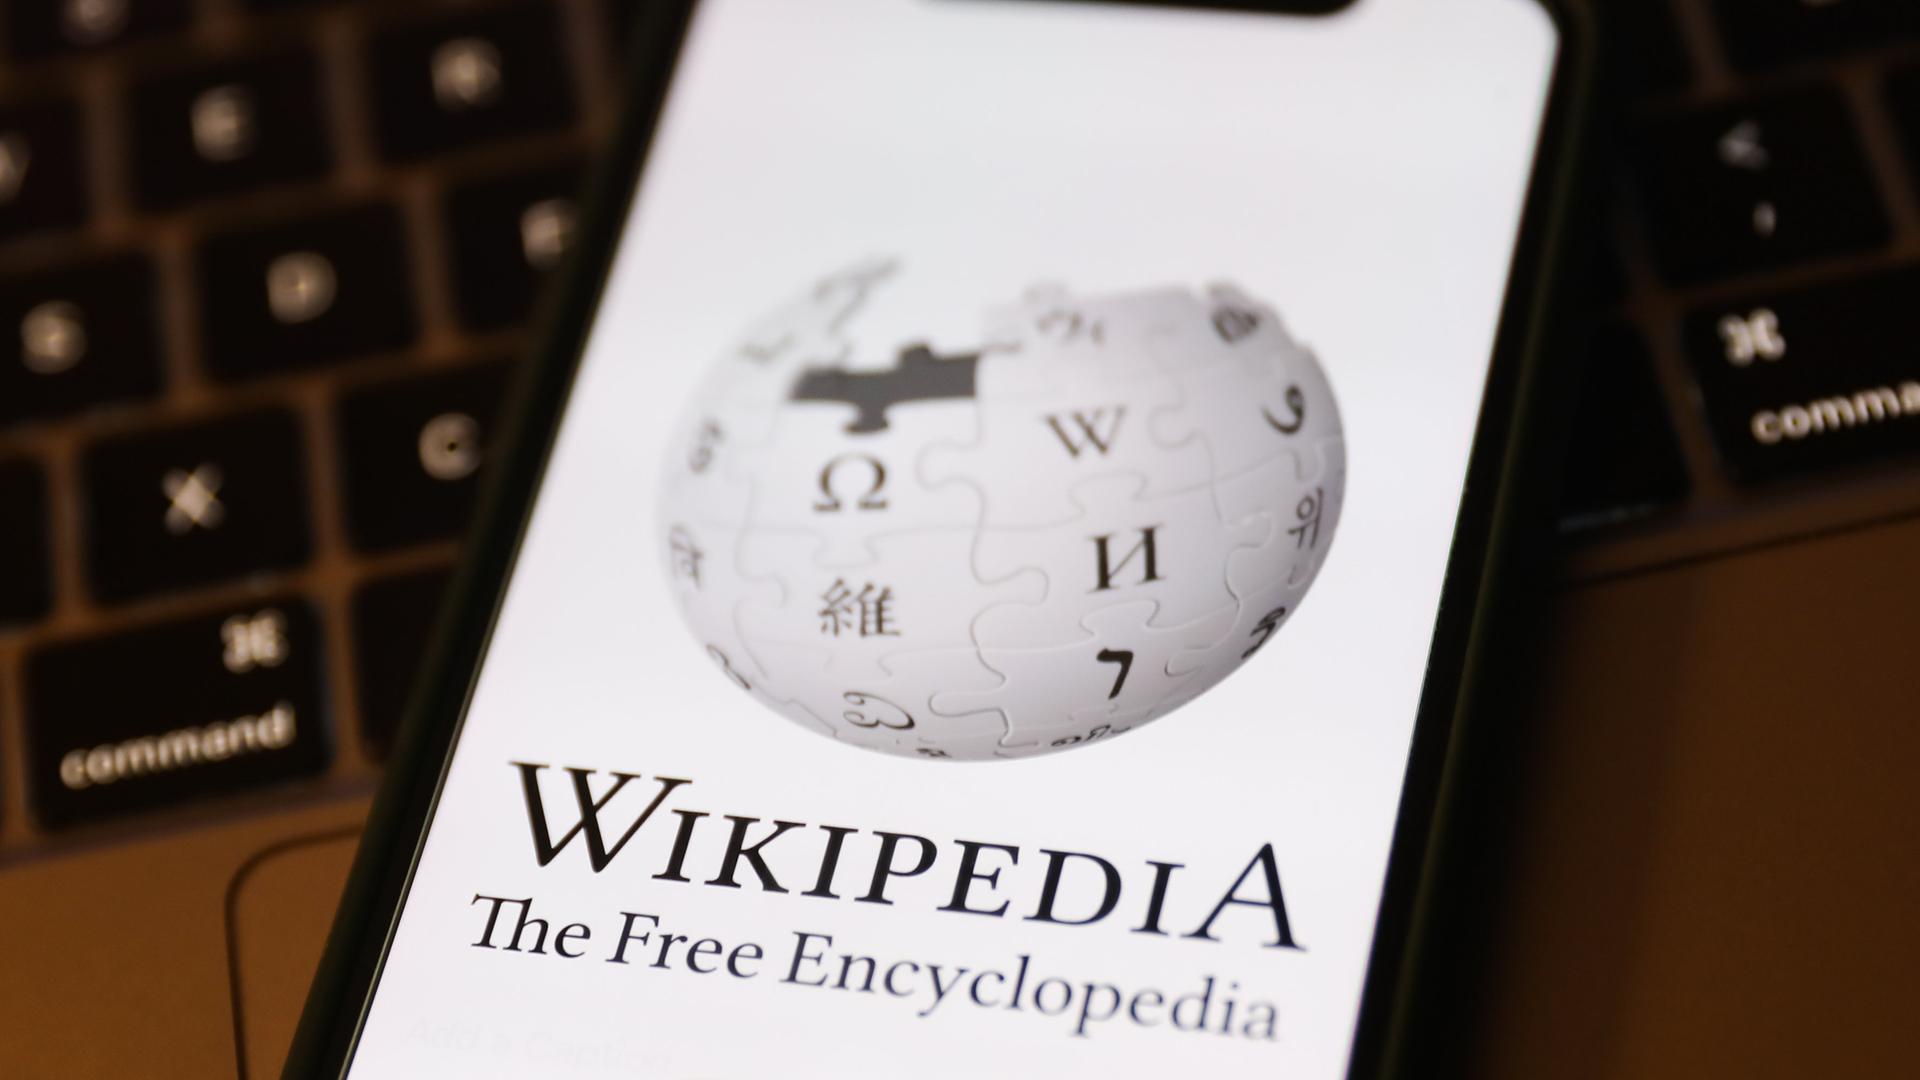 Das Logo der Online-Enzyklopädie Wikipedia ist auf einem Mobiltelefon zu sehen.